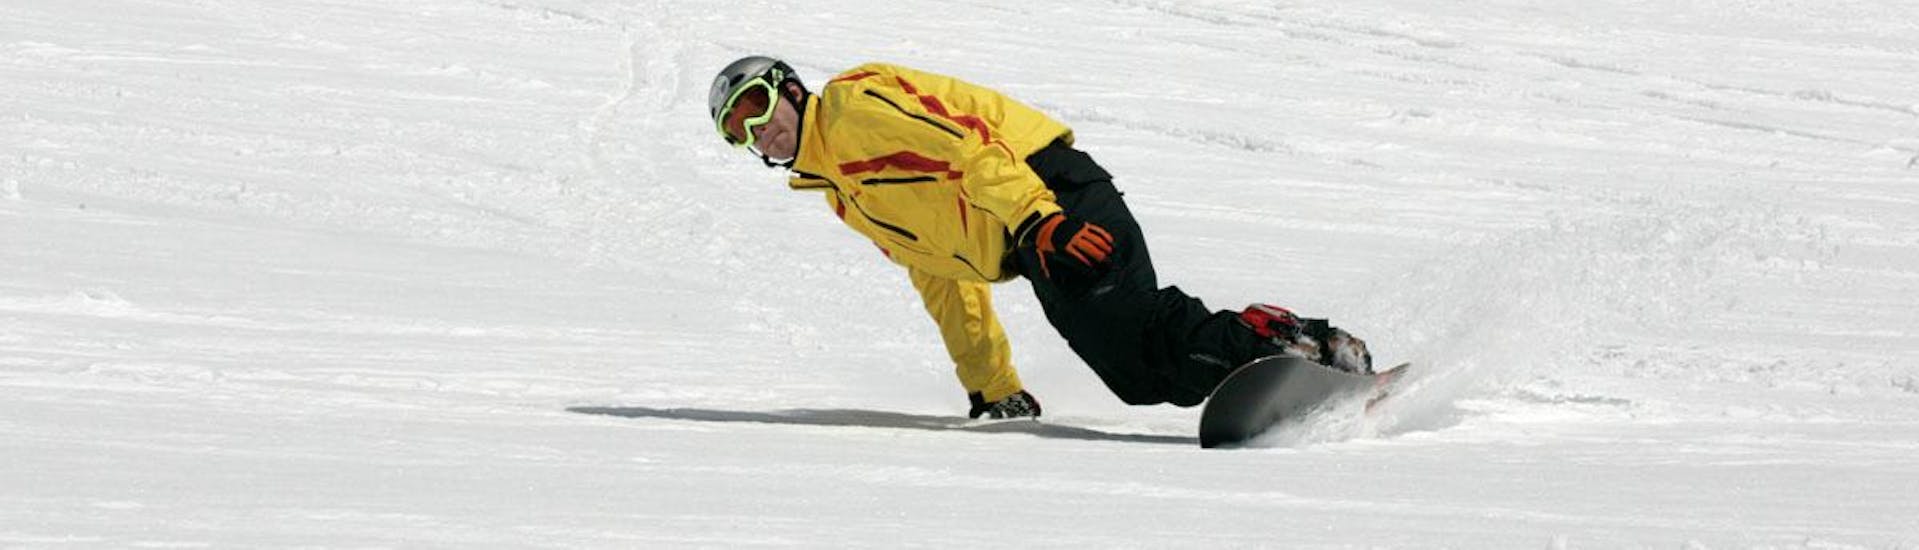 Snowboardkurs für Erwachsene für Anfänger.